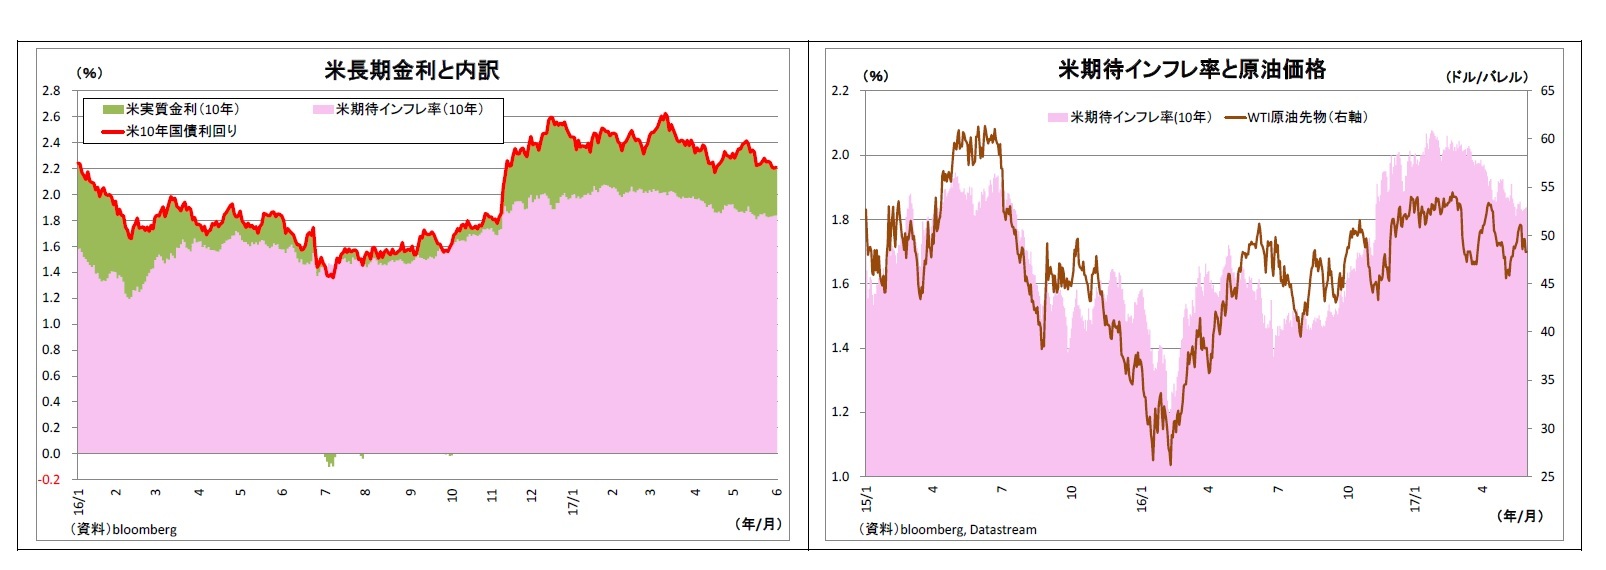 米長期金利と内訳/米期待インフレ率と原油価格